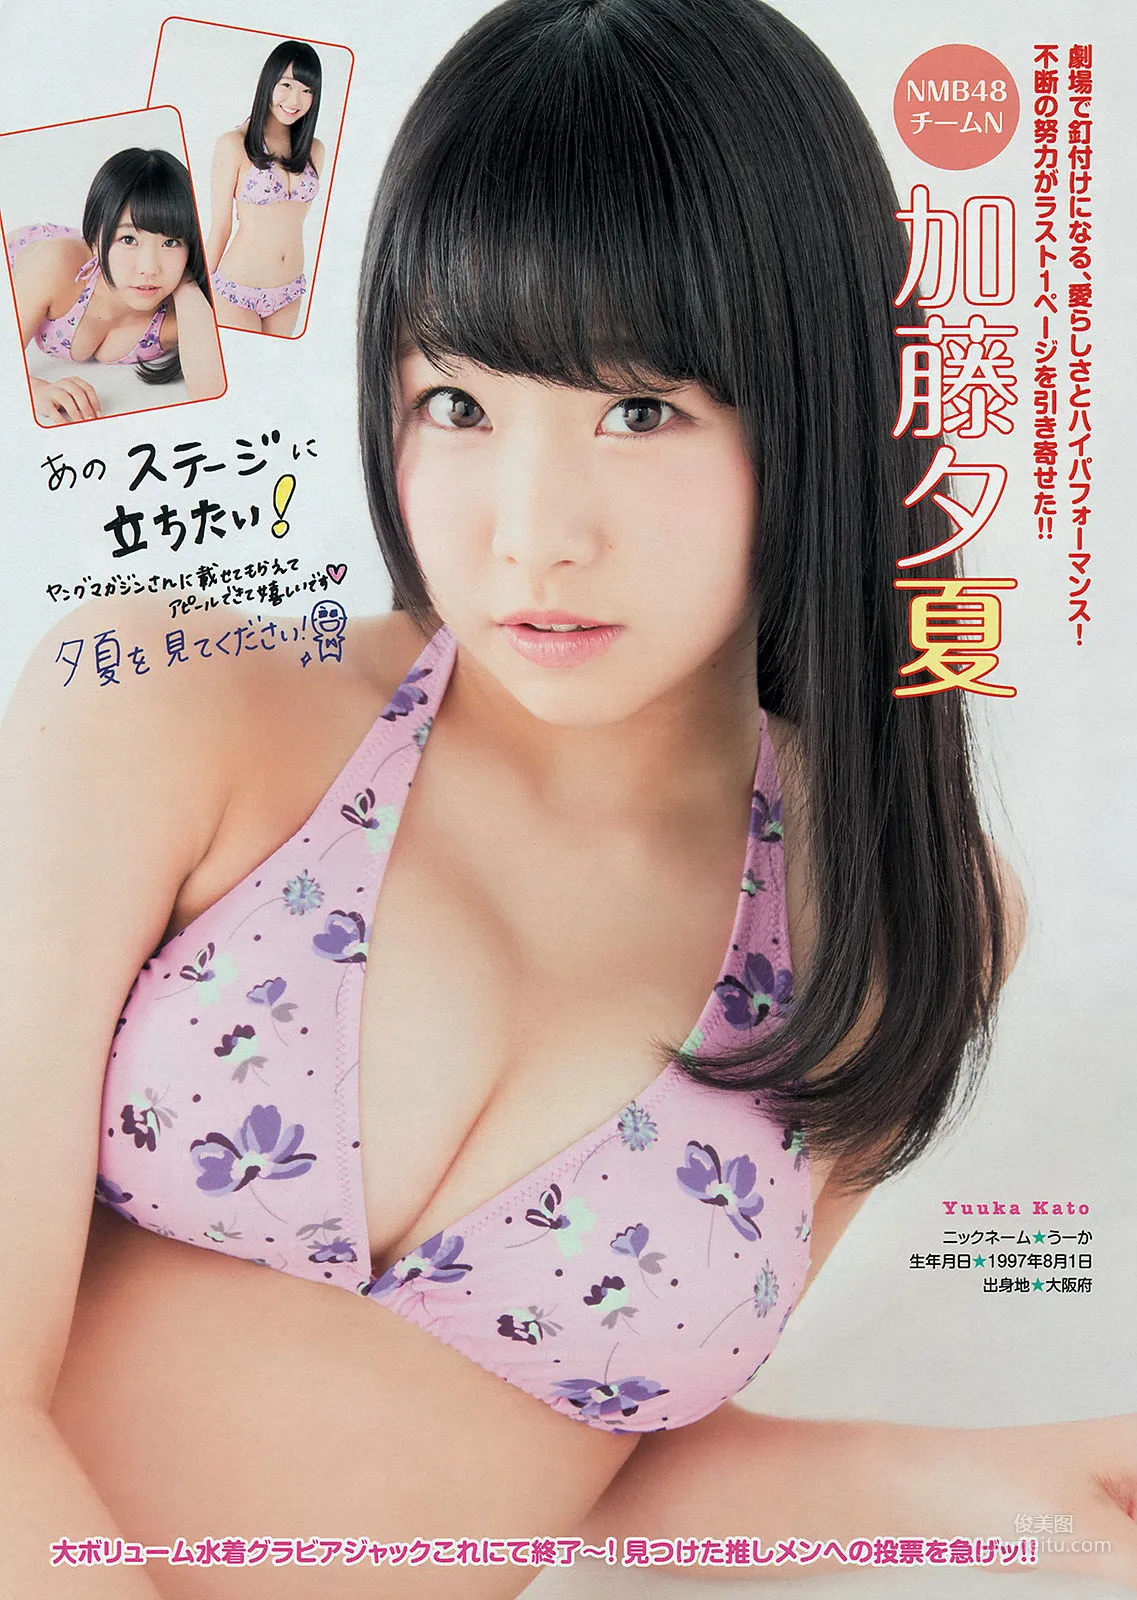 [Young Magazine] 渡辺麻友 川栄李奈 2401年No.27 写真杂志17